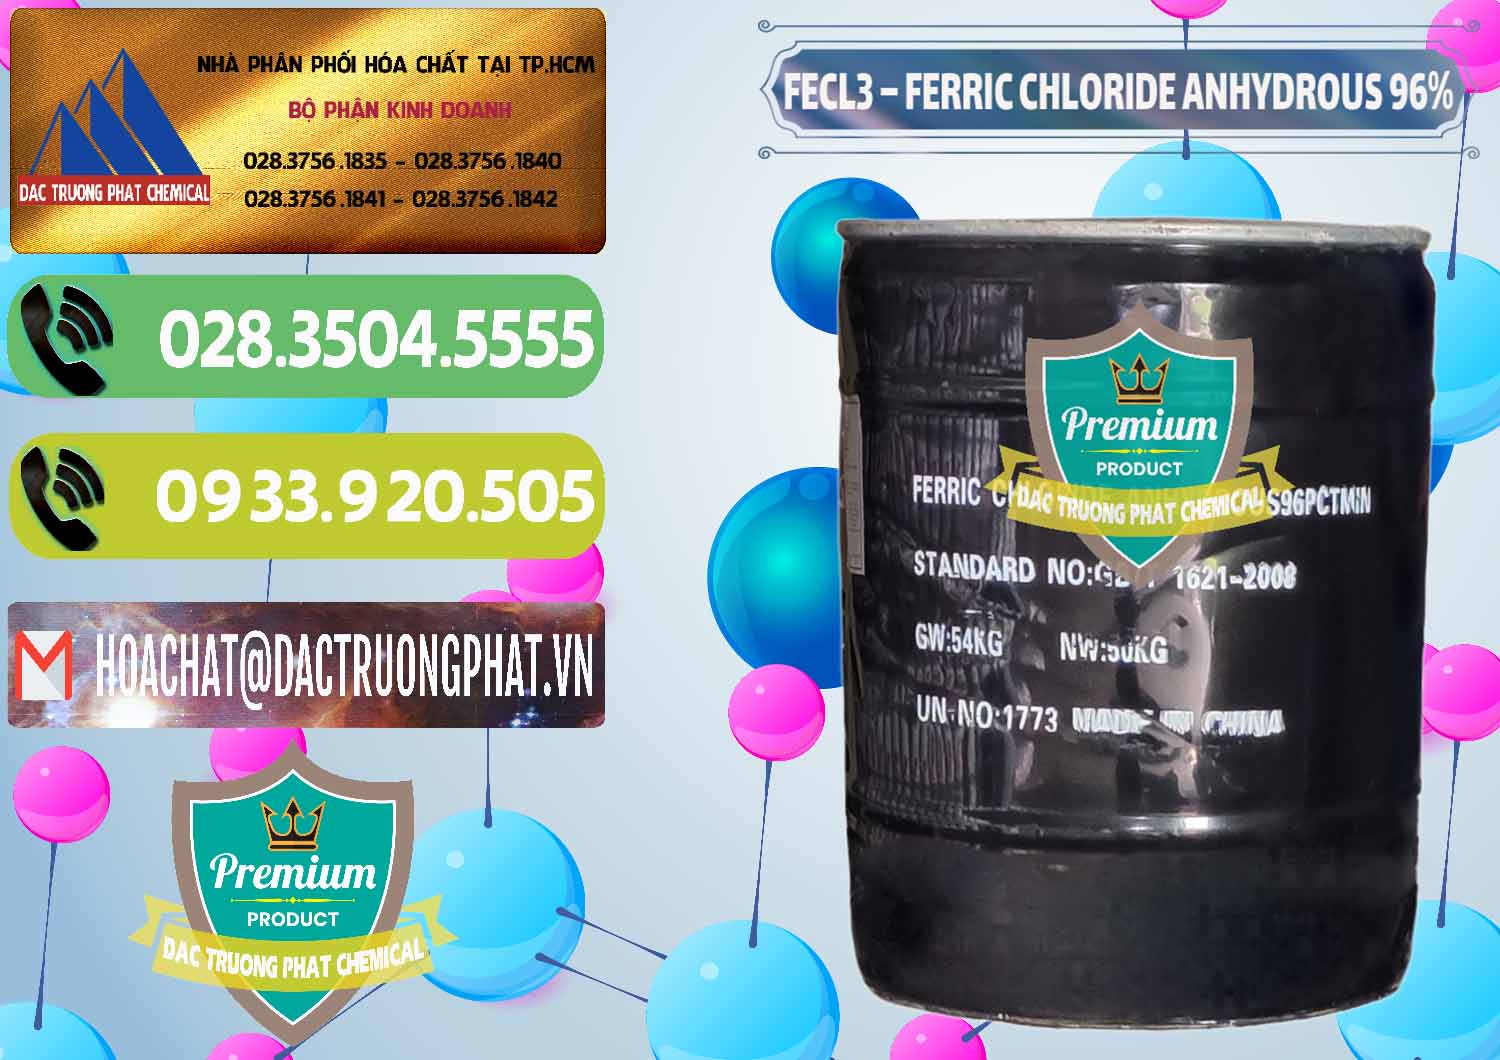 Chuyên kinh doanh & bán FECL3 – Ferric Chloride Anhydrous 96% Trung Quốc China - 0065 - Công ty chuyên phân phối ( nhập khẩu ) hóa chất tại TP.HCM - hoachatmientay.vn